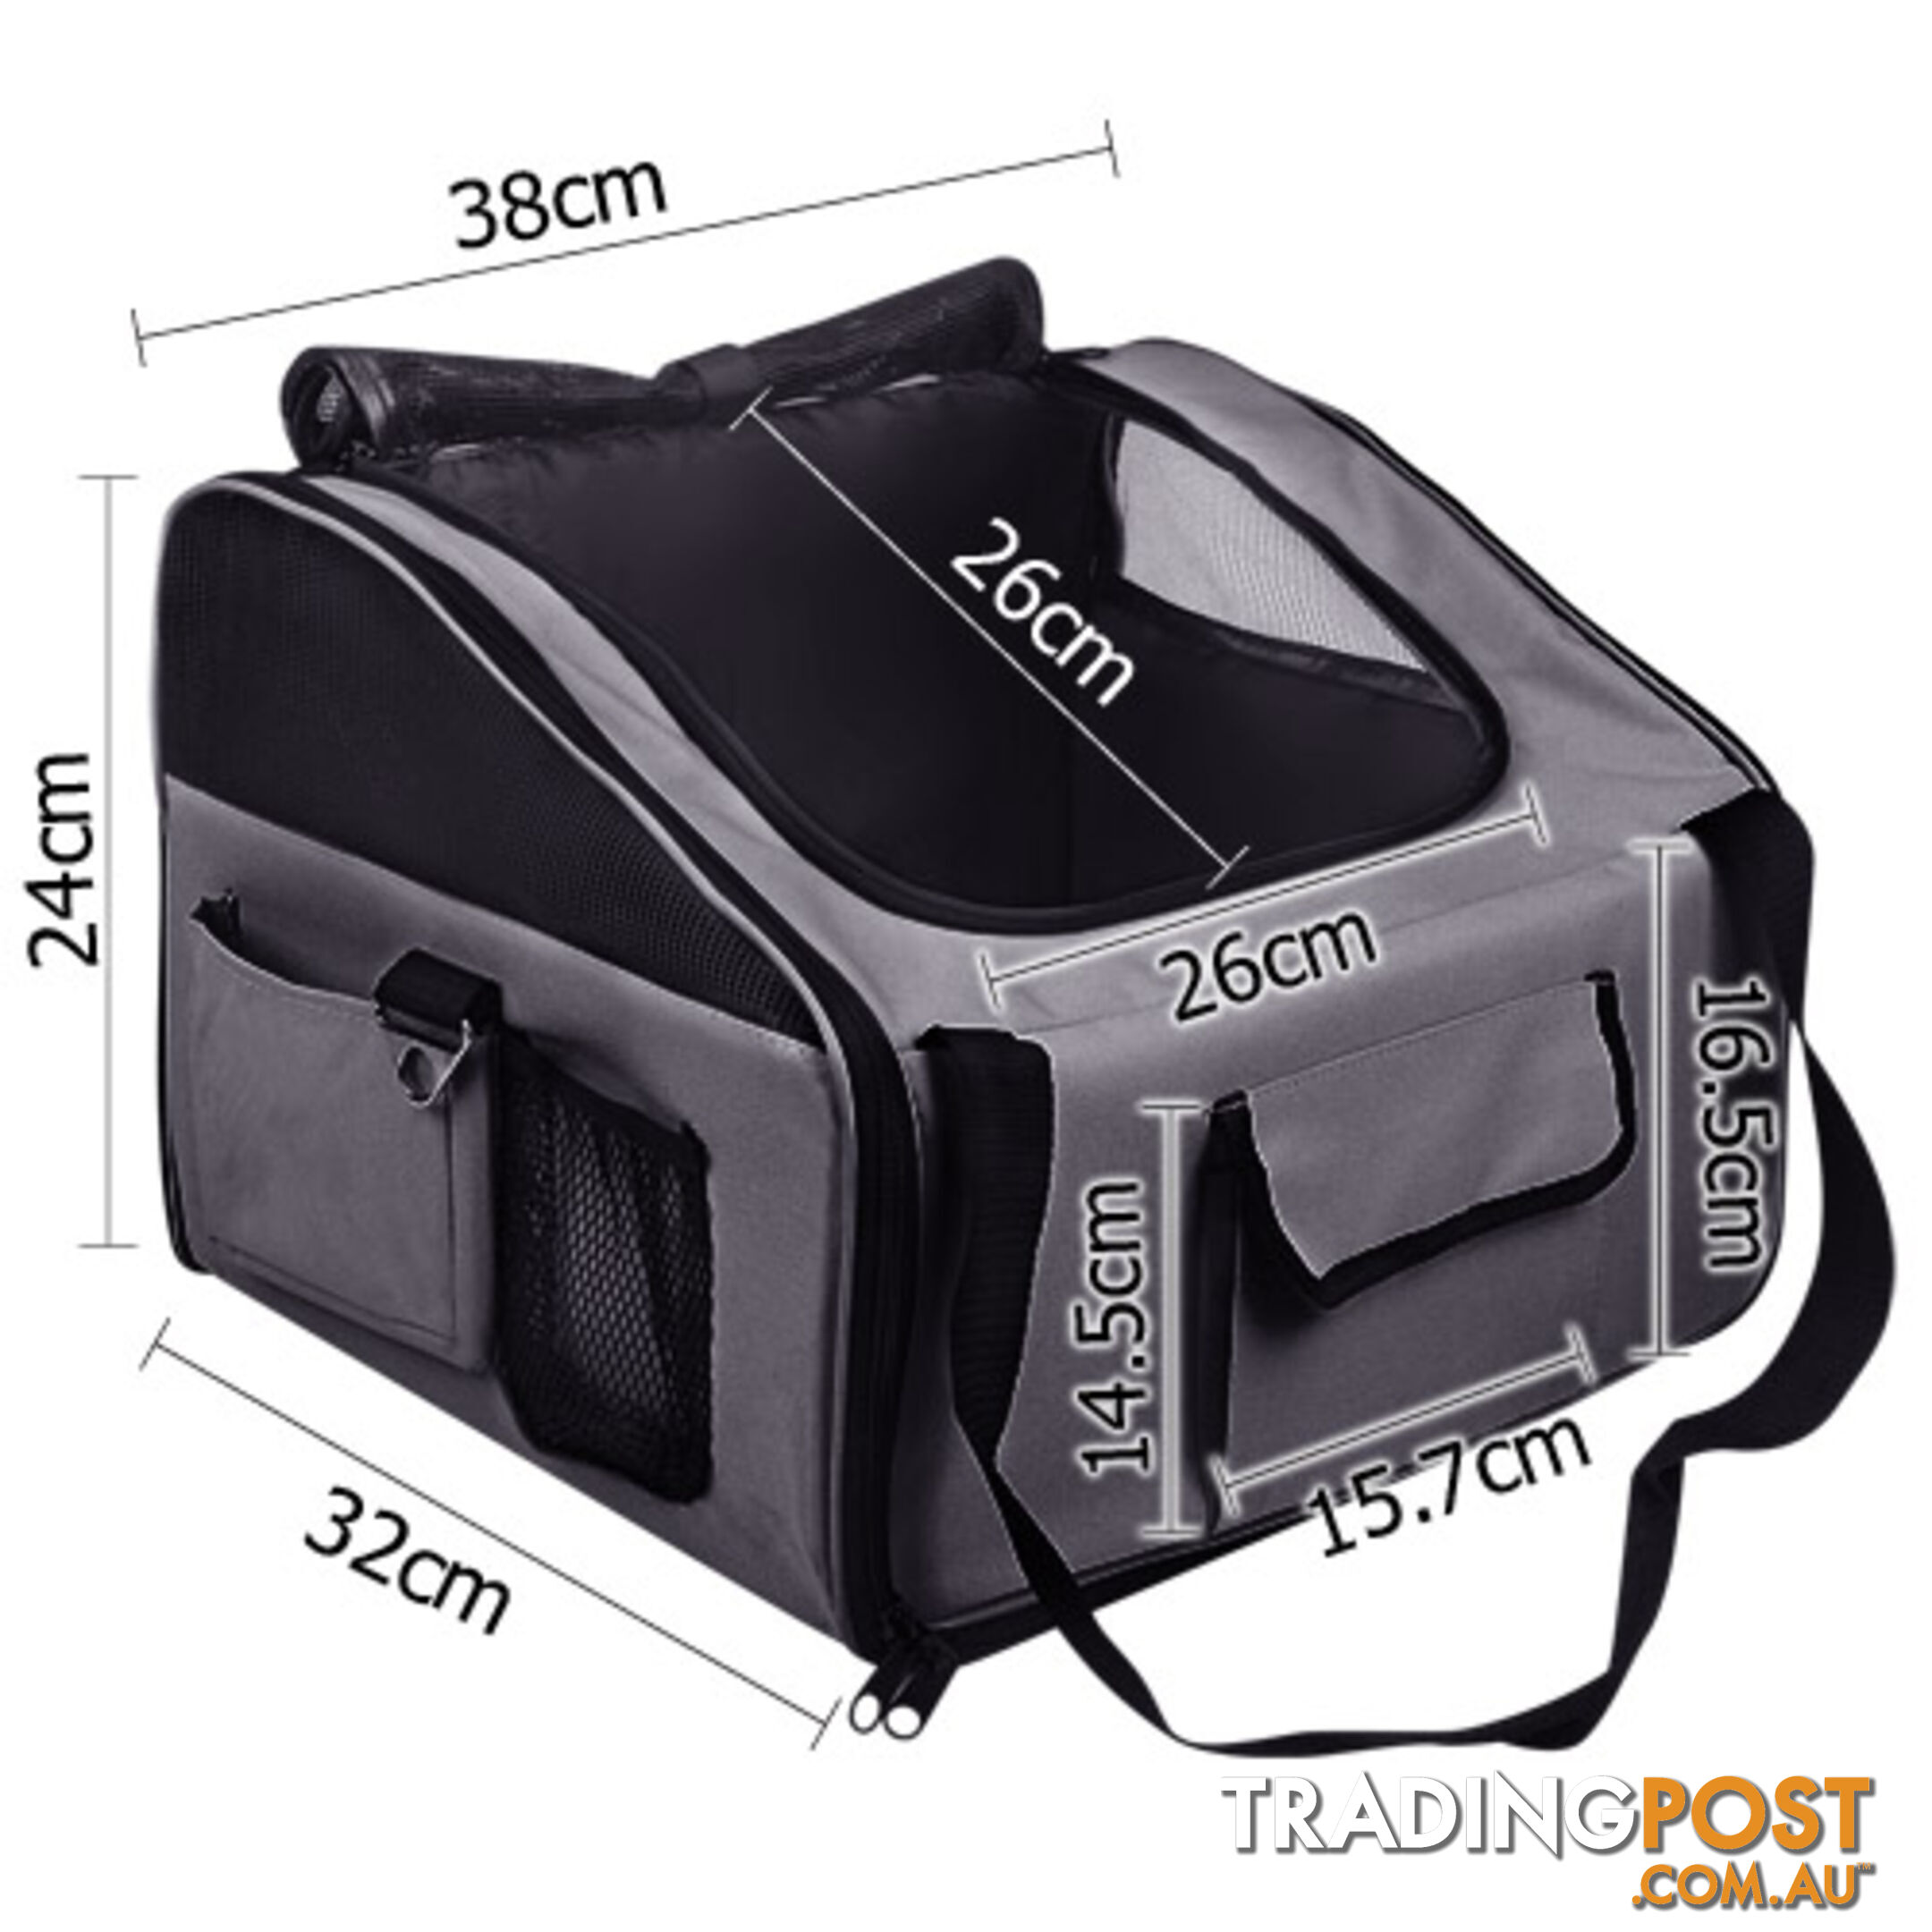 Pet Dog Cat Car Seat Carrier Travel Bag Small Grey